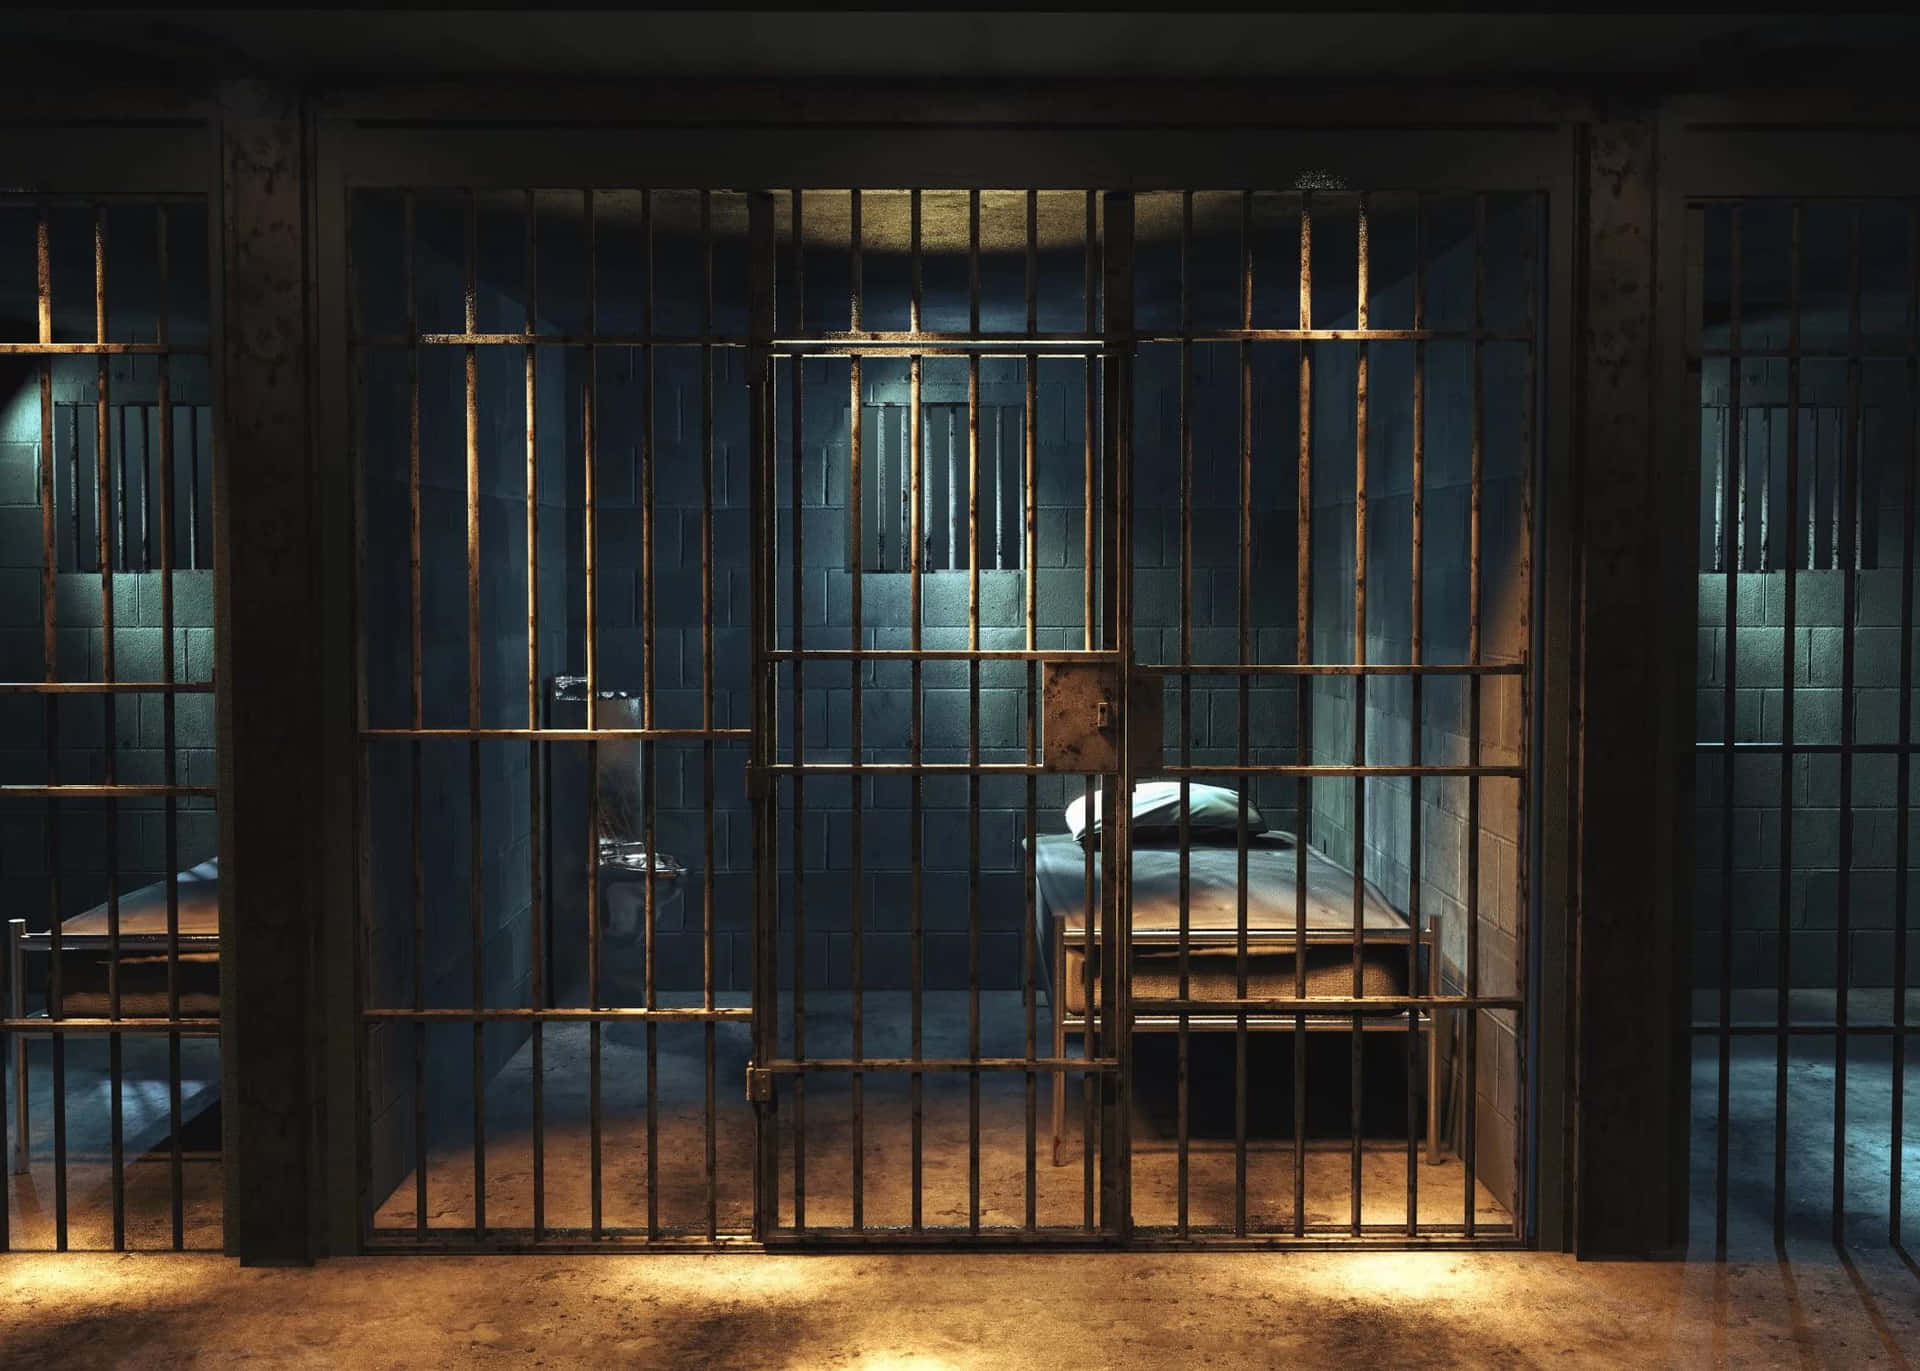 Hintergrundbildeiner Gefängniszelle Bei Nacht.